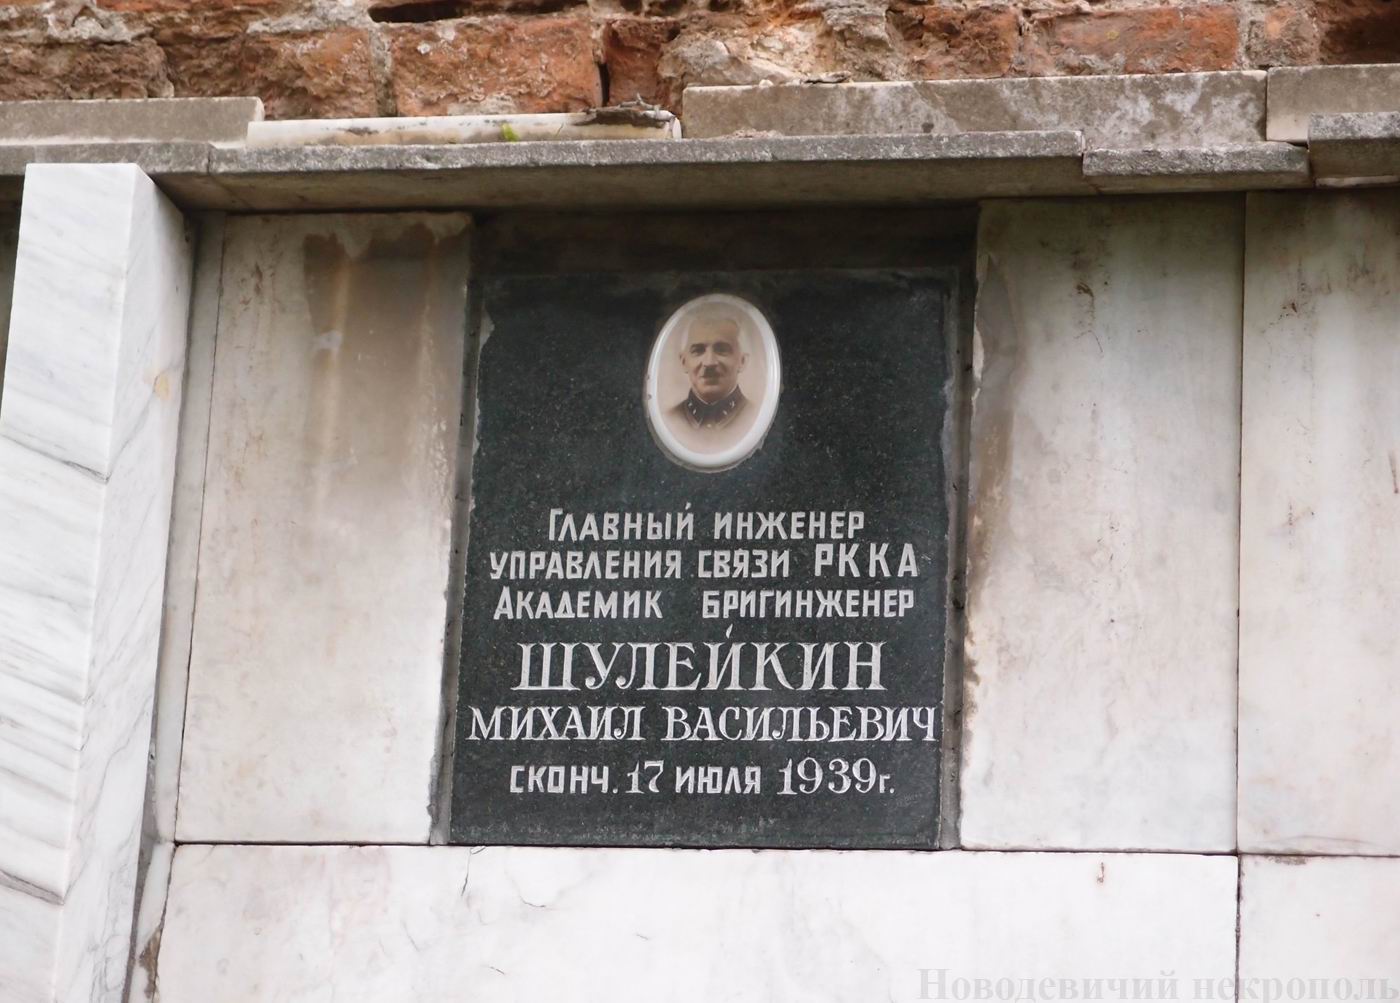 Плита на нише Шулейкина М.В. (1884-1939), на Новодевичьем кладбище (колумбарий [1]-43-1).